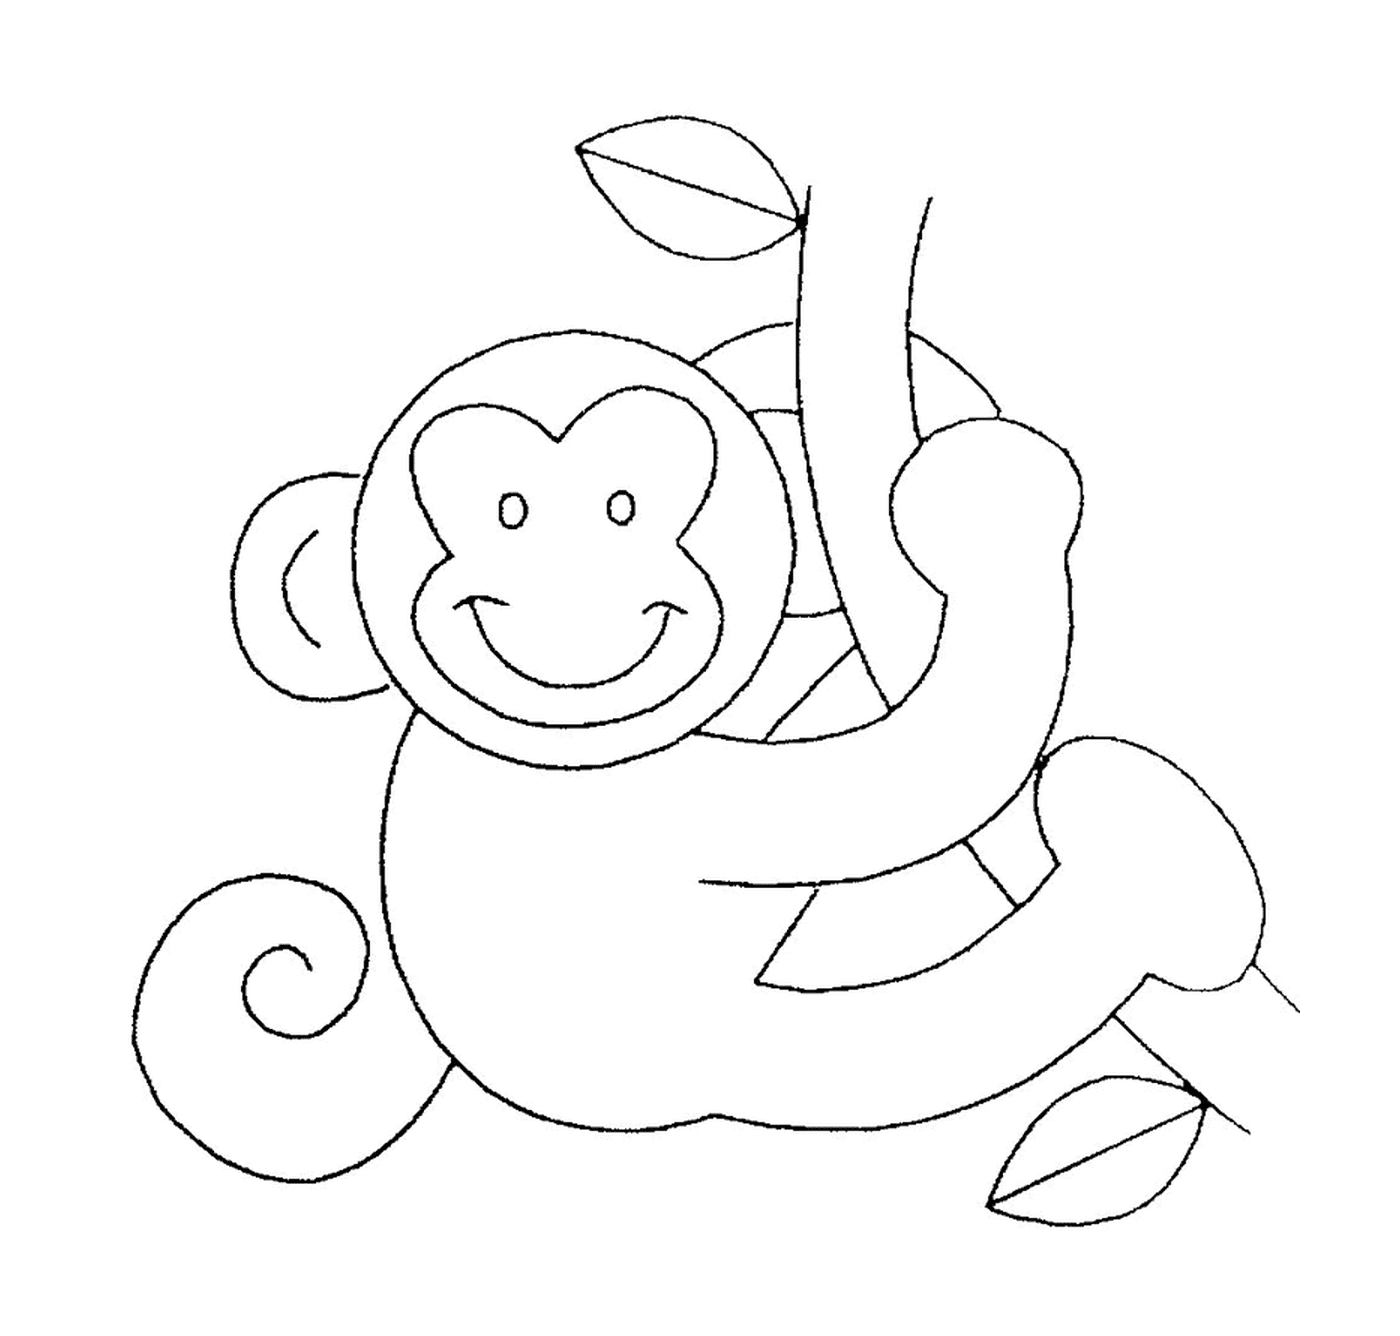  Balanços de macaco em uma liana 